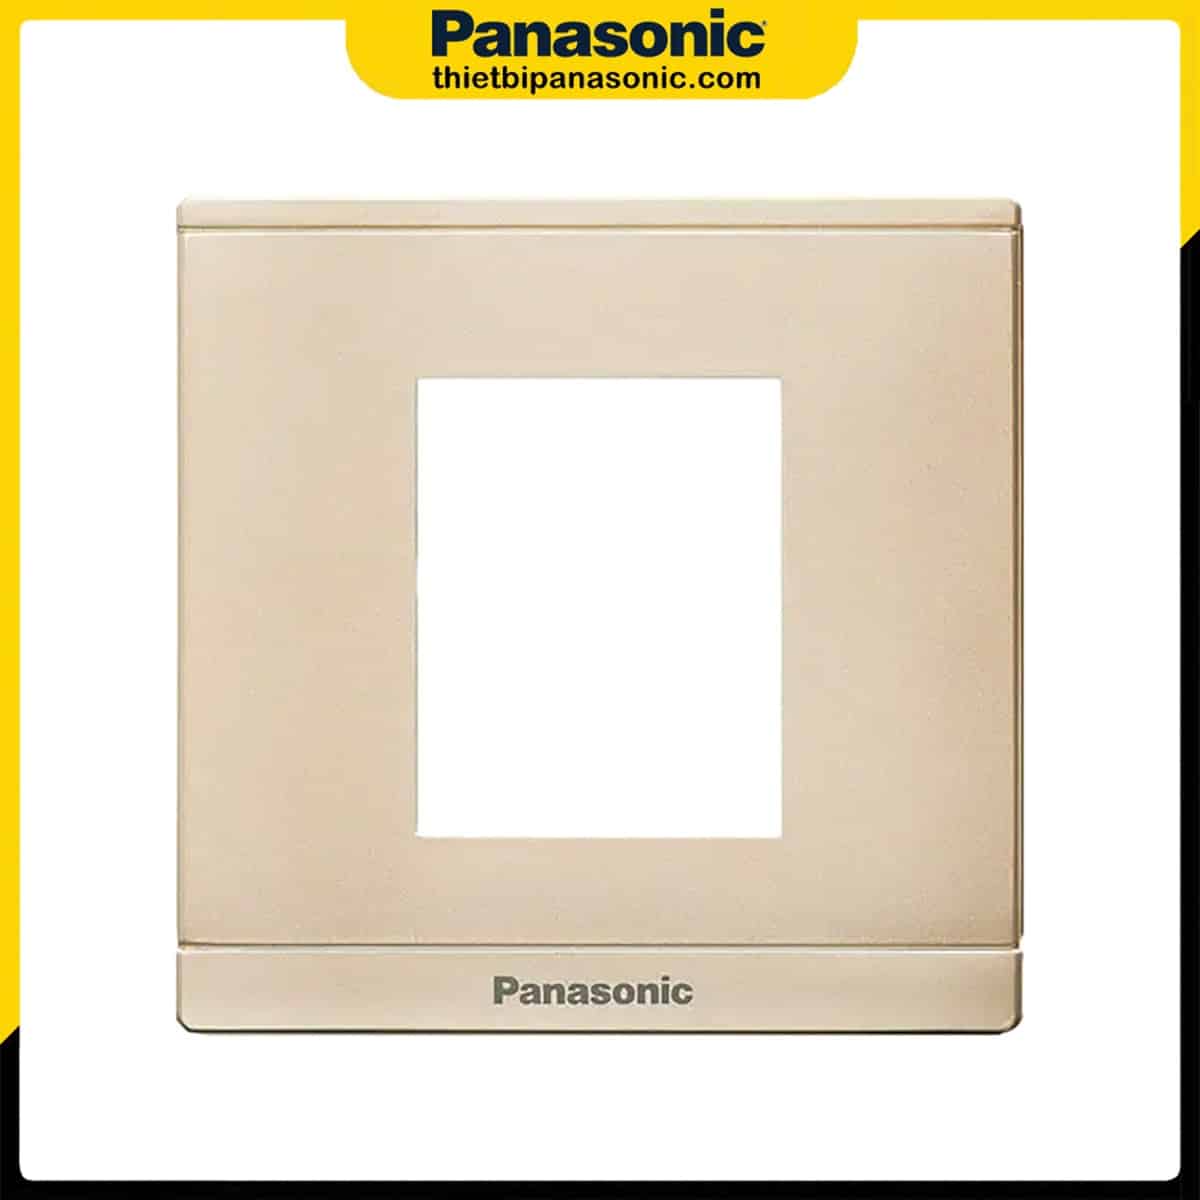 Mặt 2 thiết bị Panasonic Moderva màu vàng ánh kim WMFV7812MYZ